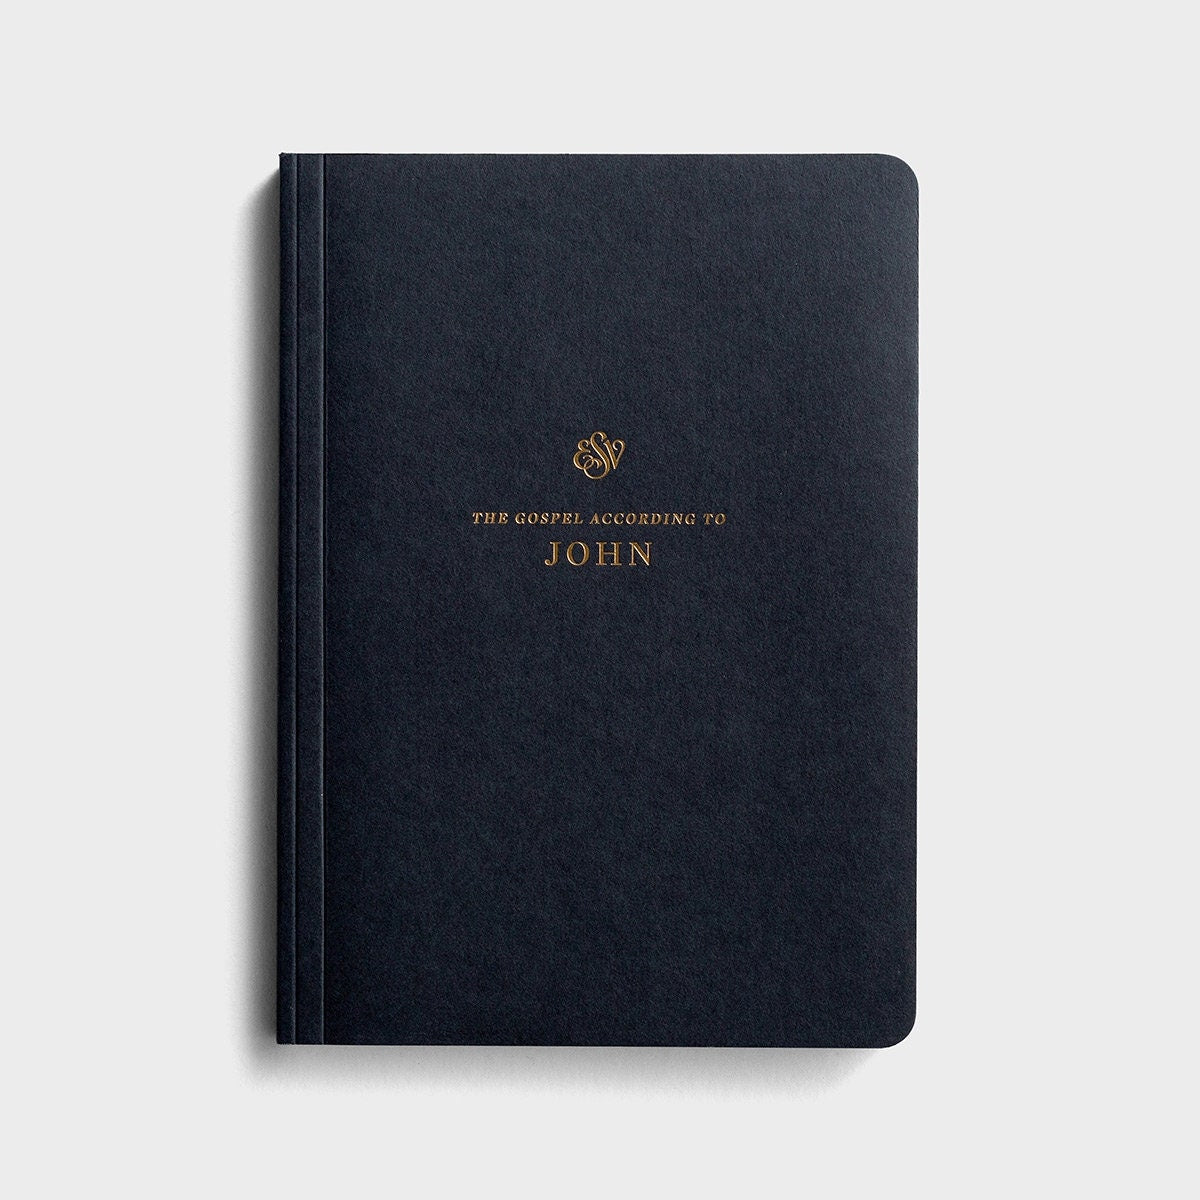 Gospel of John journal, Black Cover, Gold Foil Lettering, ESV